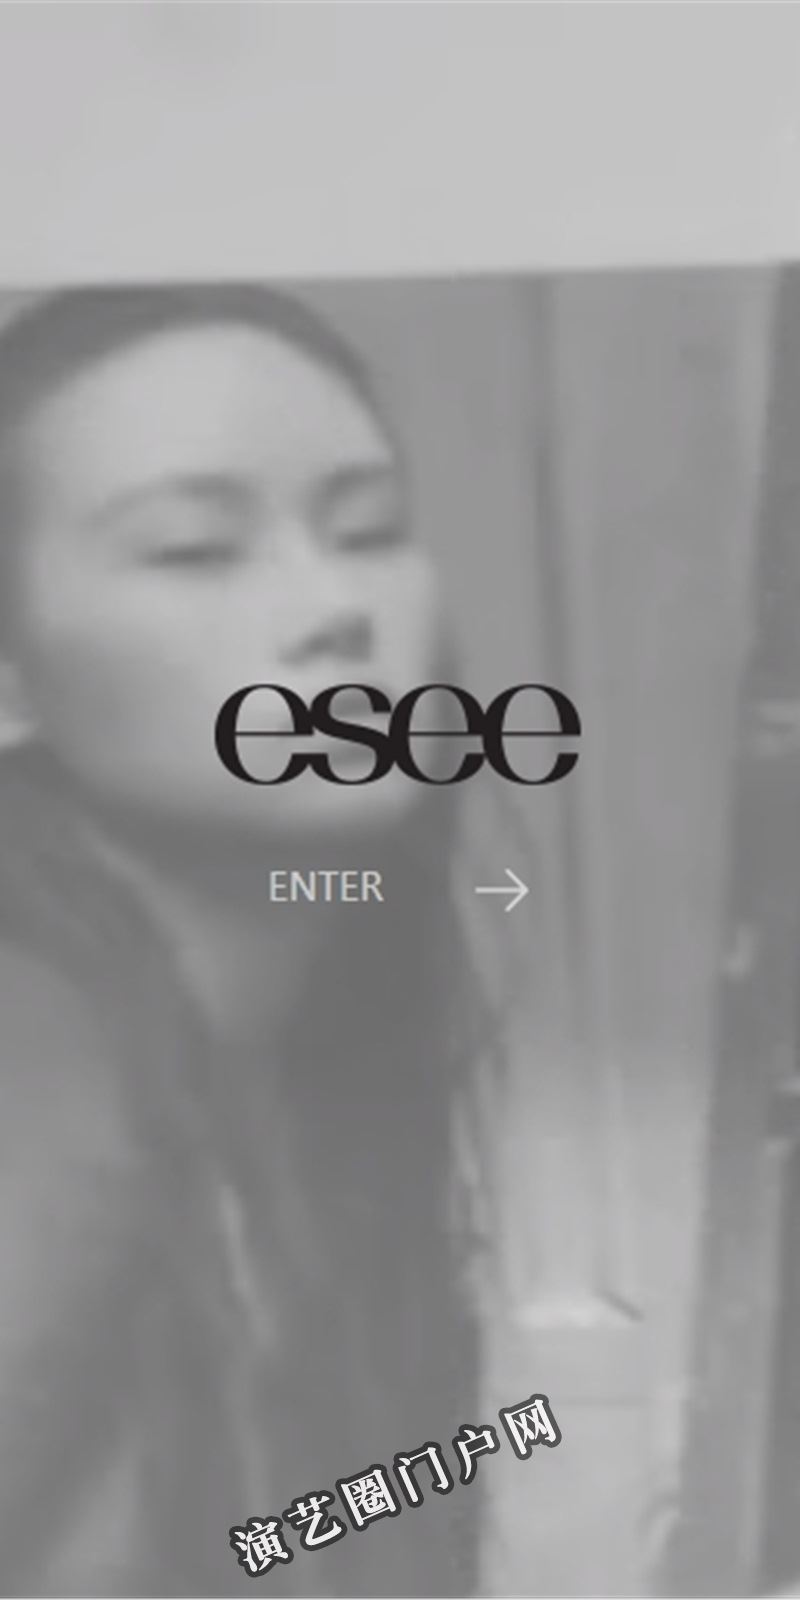 eseemodel|esee英模|英模文化|上海英模文化发展有限公司截图